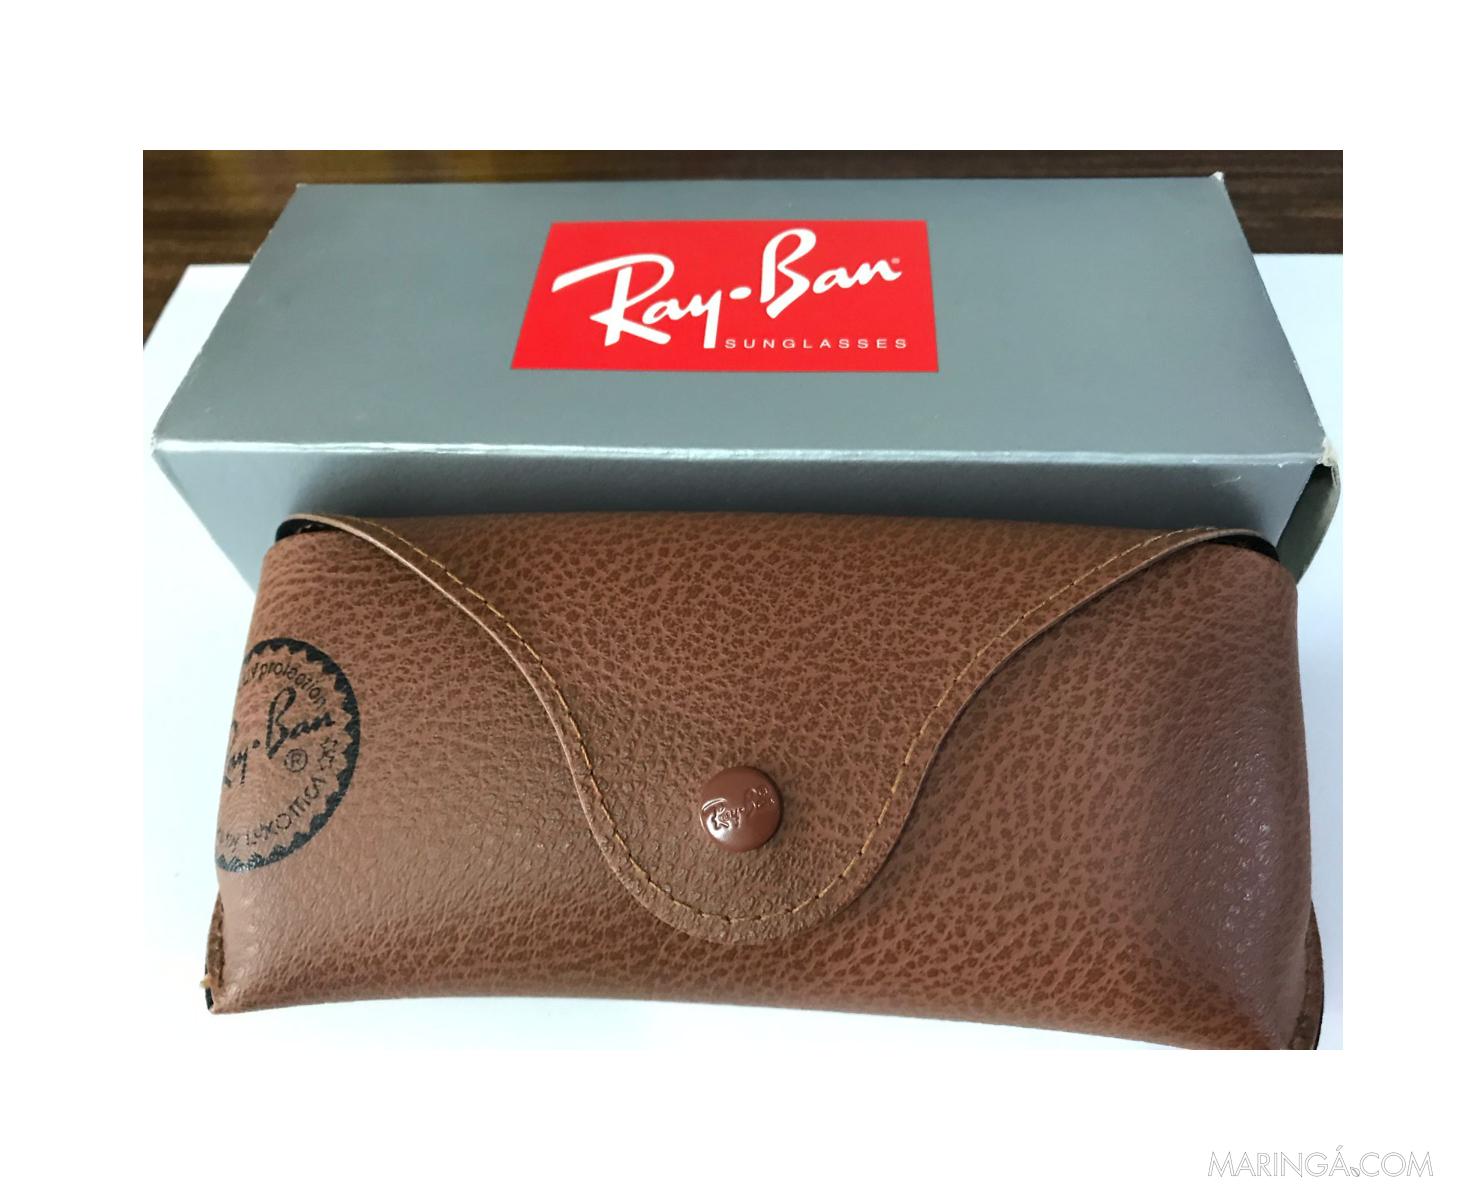 Óculos Ray-Ban feminino modelo Jackie Onassis referencia RB 4098 com caixa e estojo